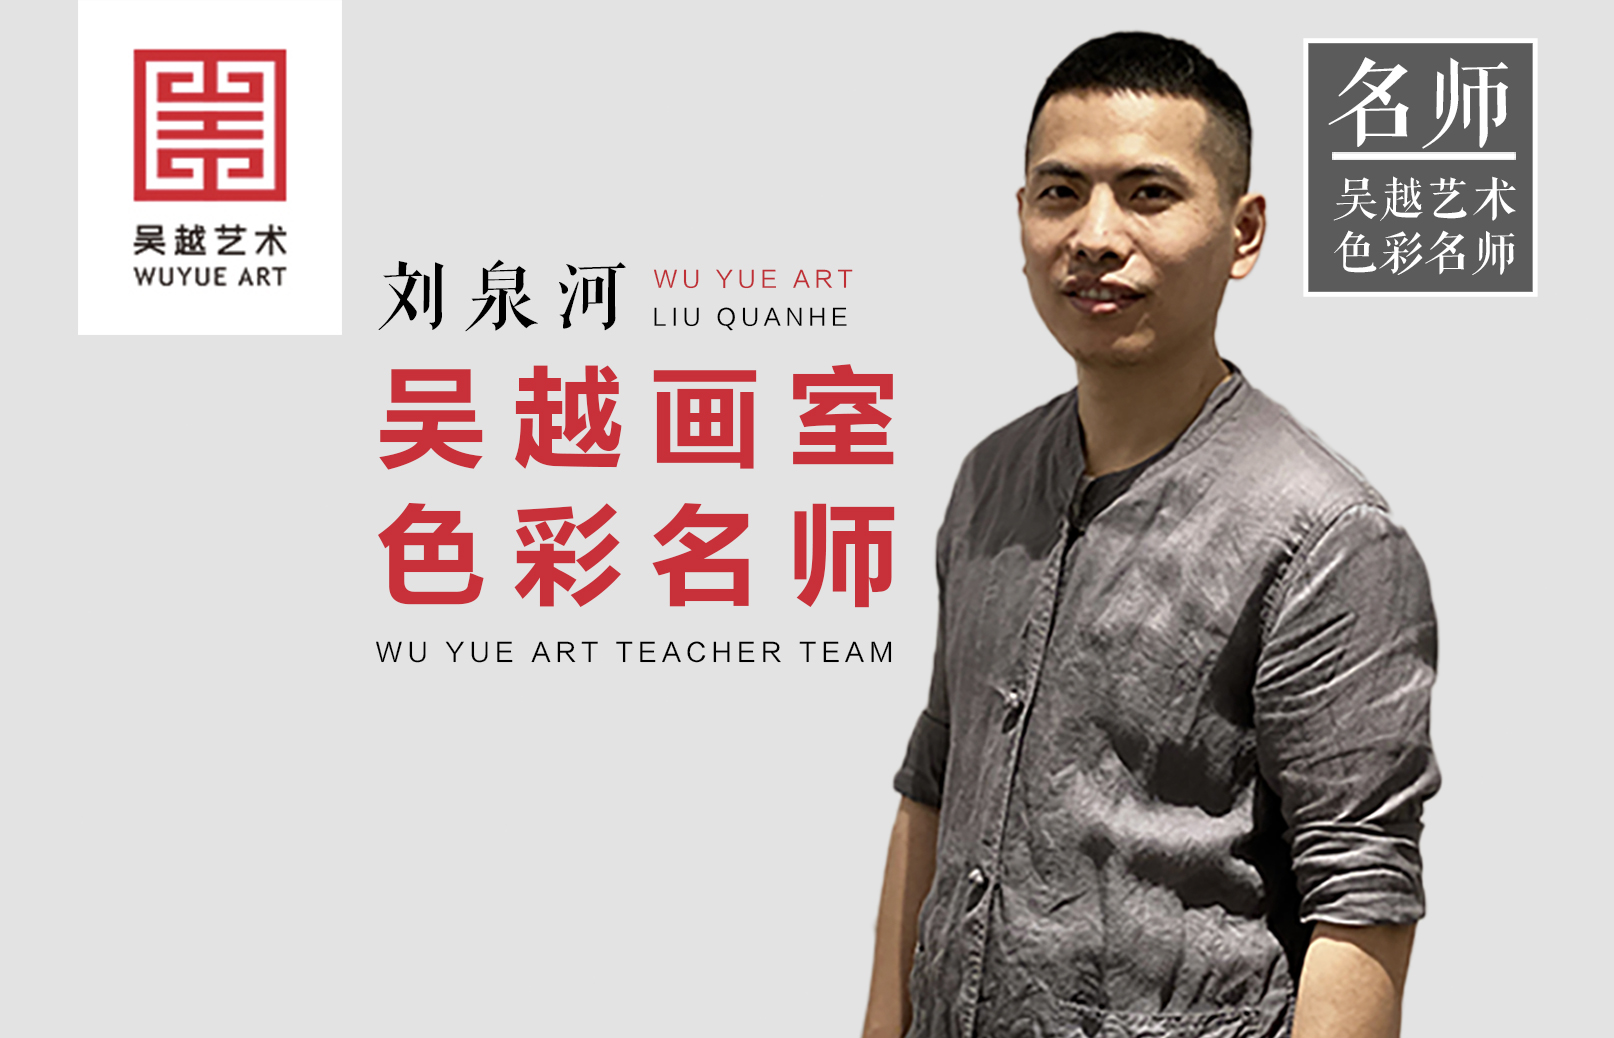 吴越名师 | 刘泉河：吴越艺术全国团色彩教学负责人，教学严谨，管理严格，有